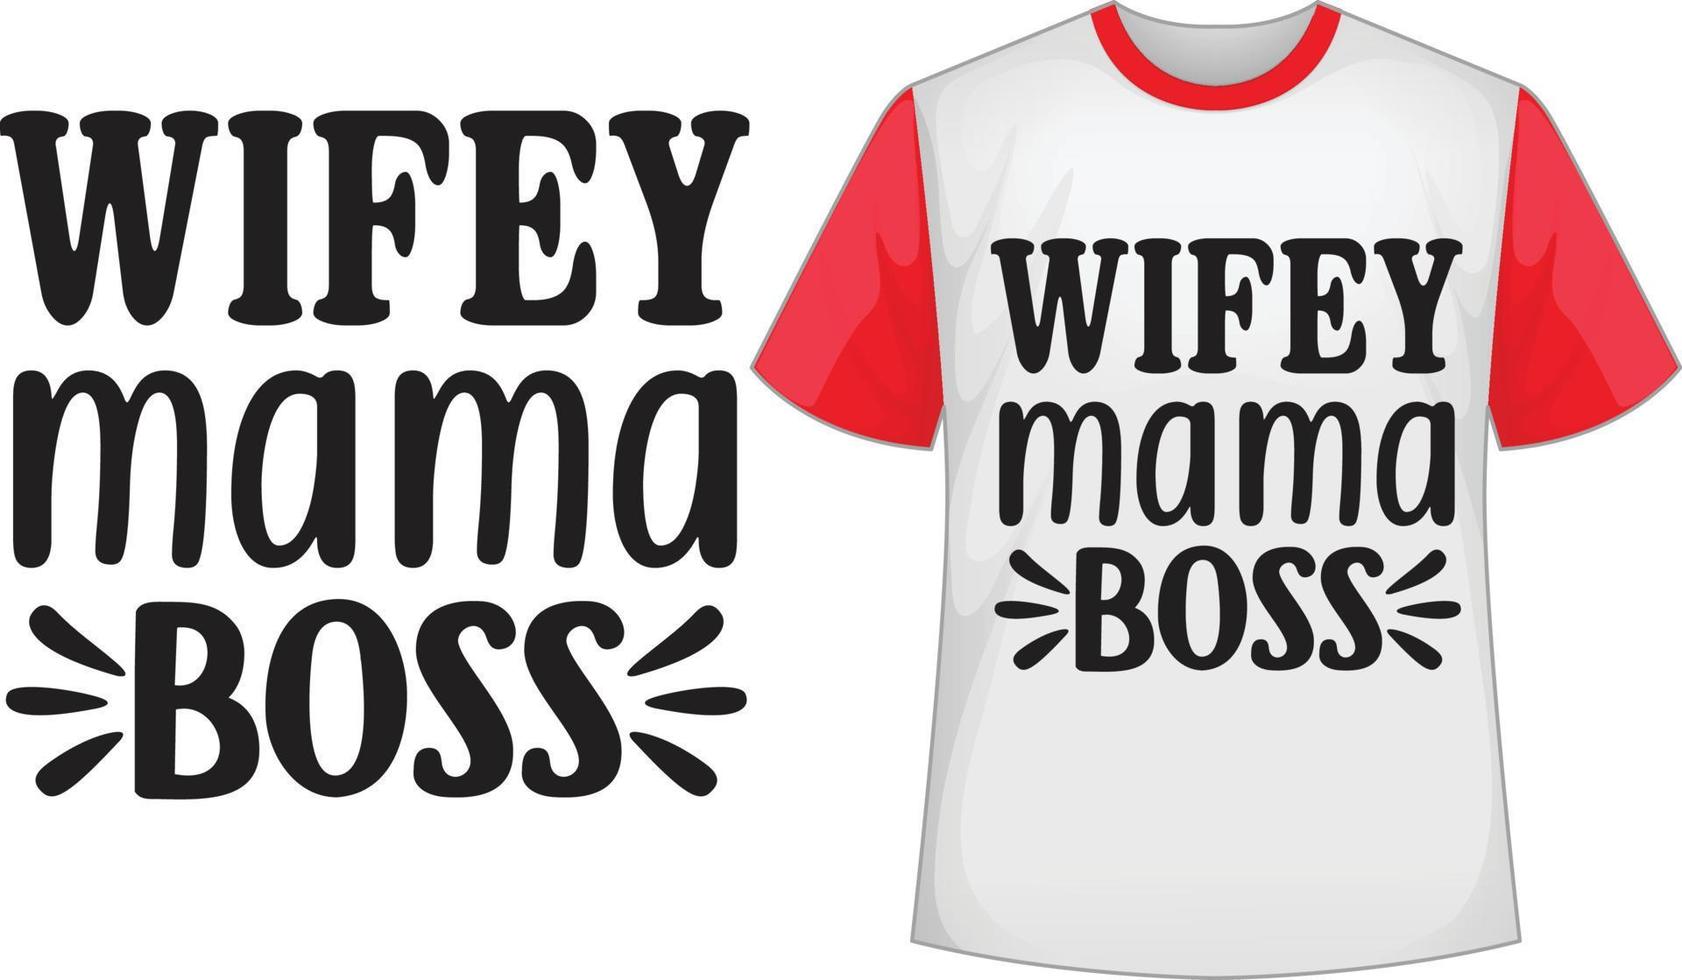 Wifey mama boss svg t shirt design vector